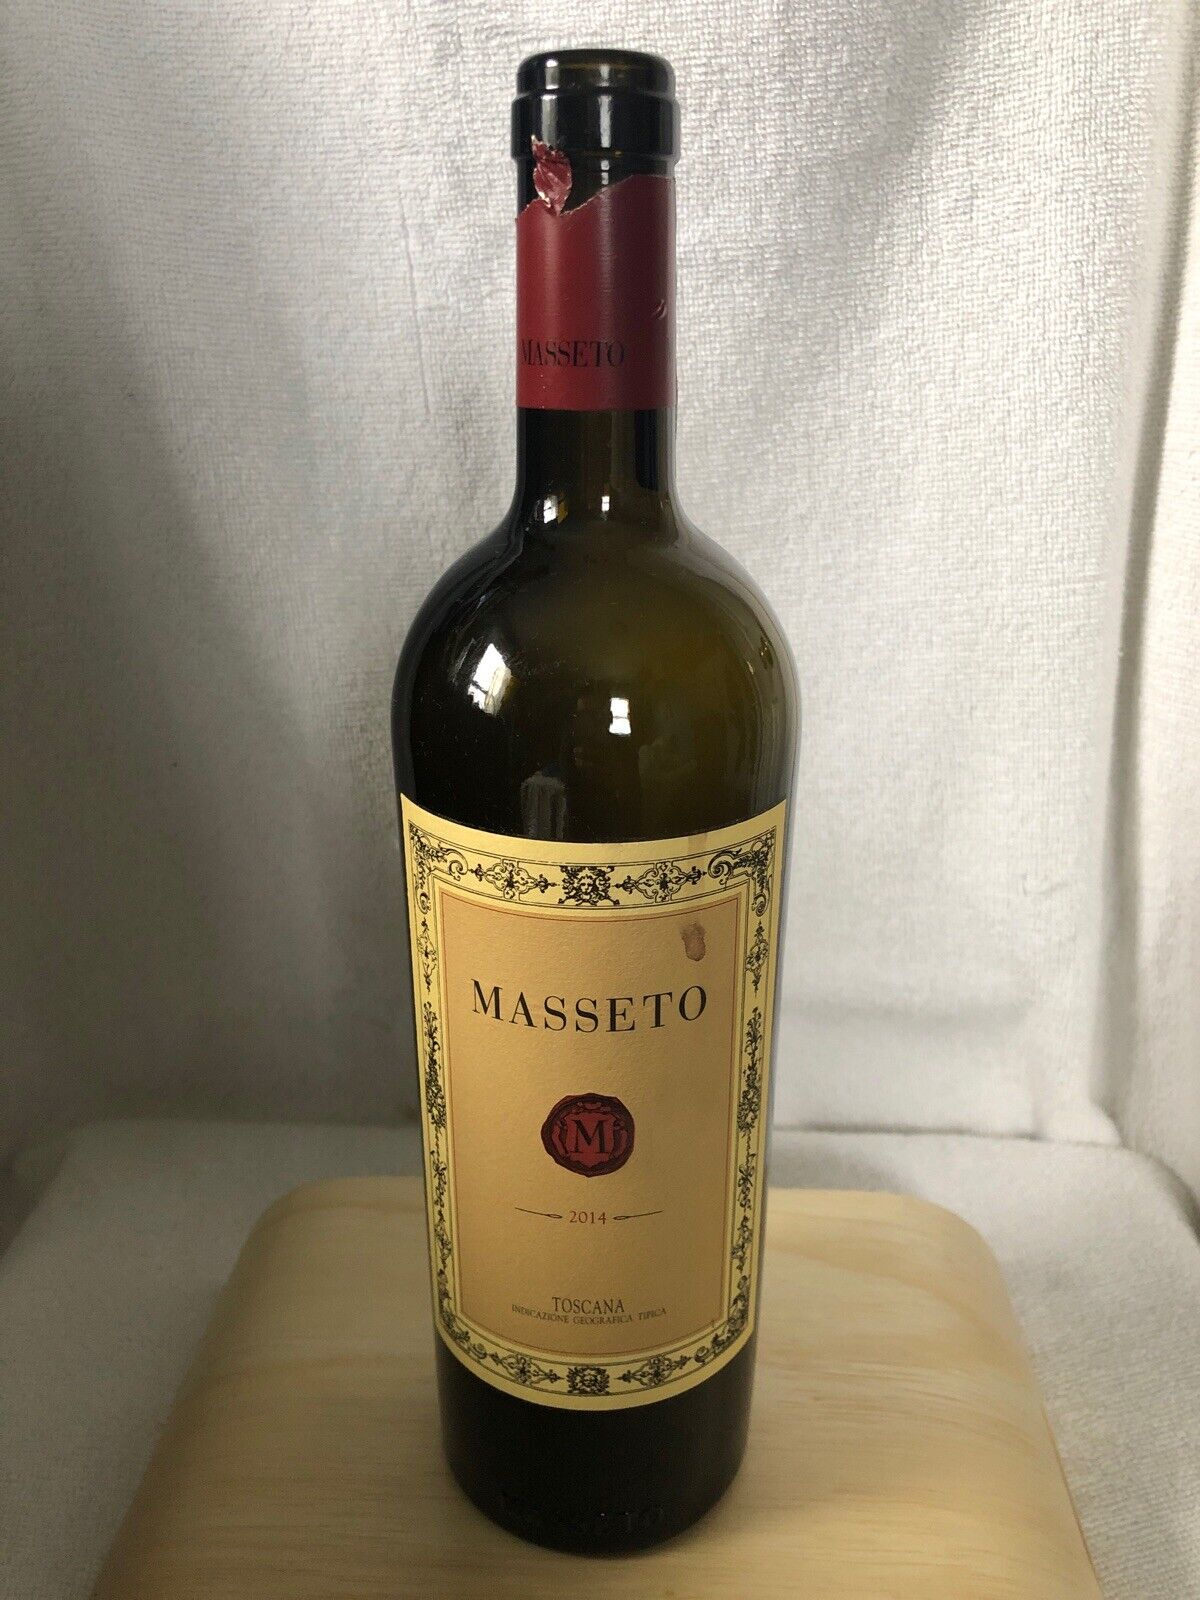 Masseto Tenuta Dell Ornellaia 2014 Wine Bottle Empty Tuscany Italy No Cork